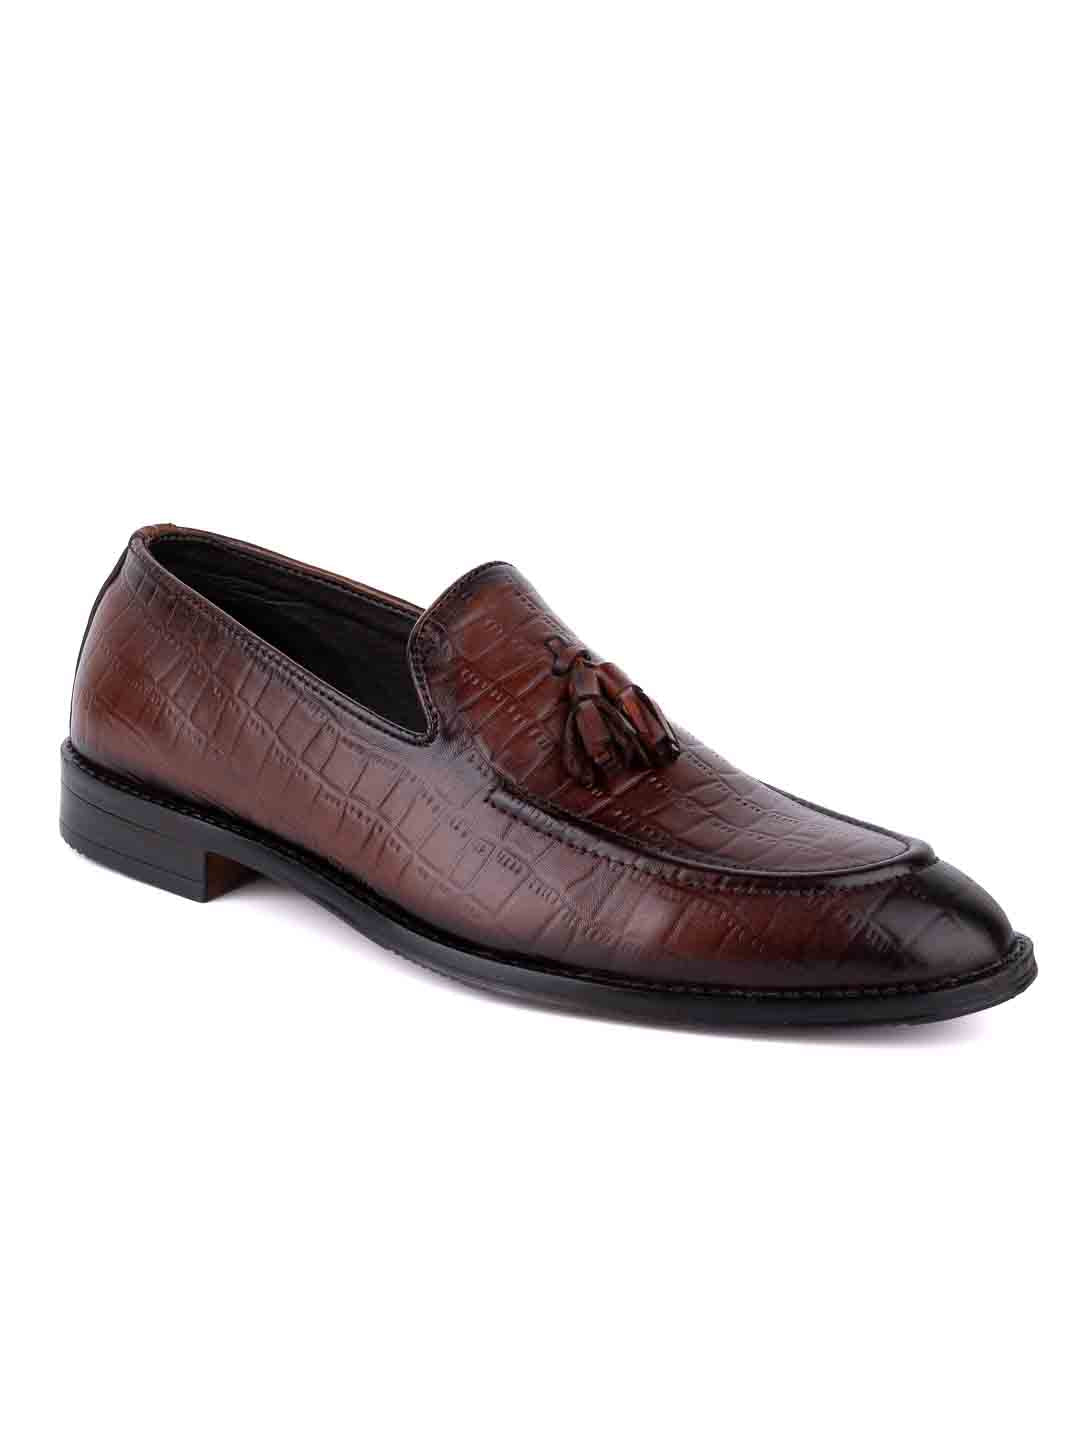  Footwear, Men Footwear, Brown Formal Loafers